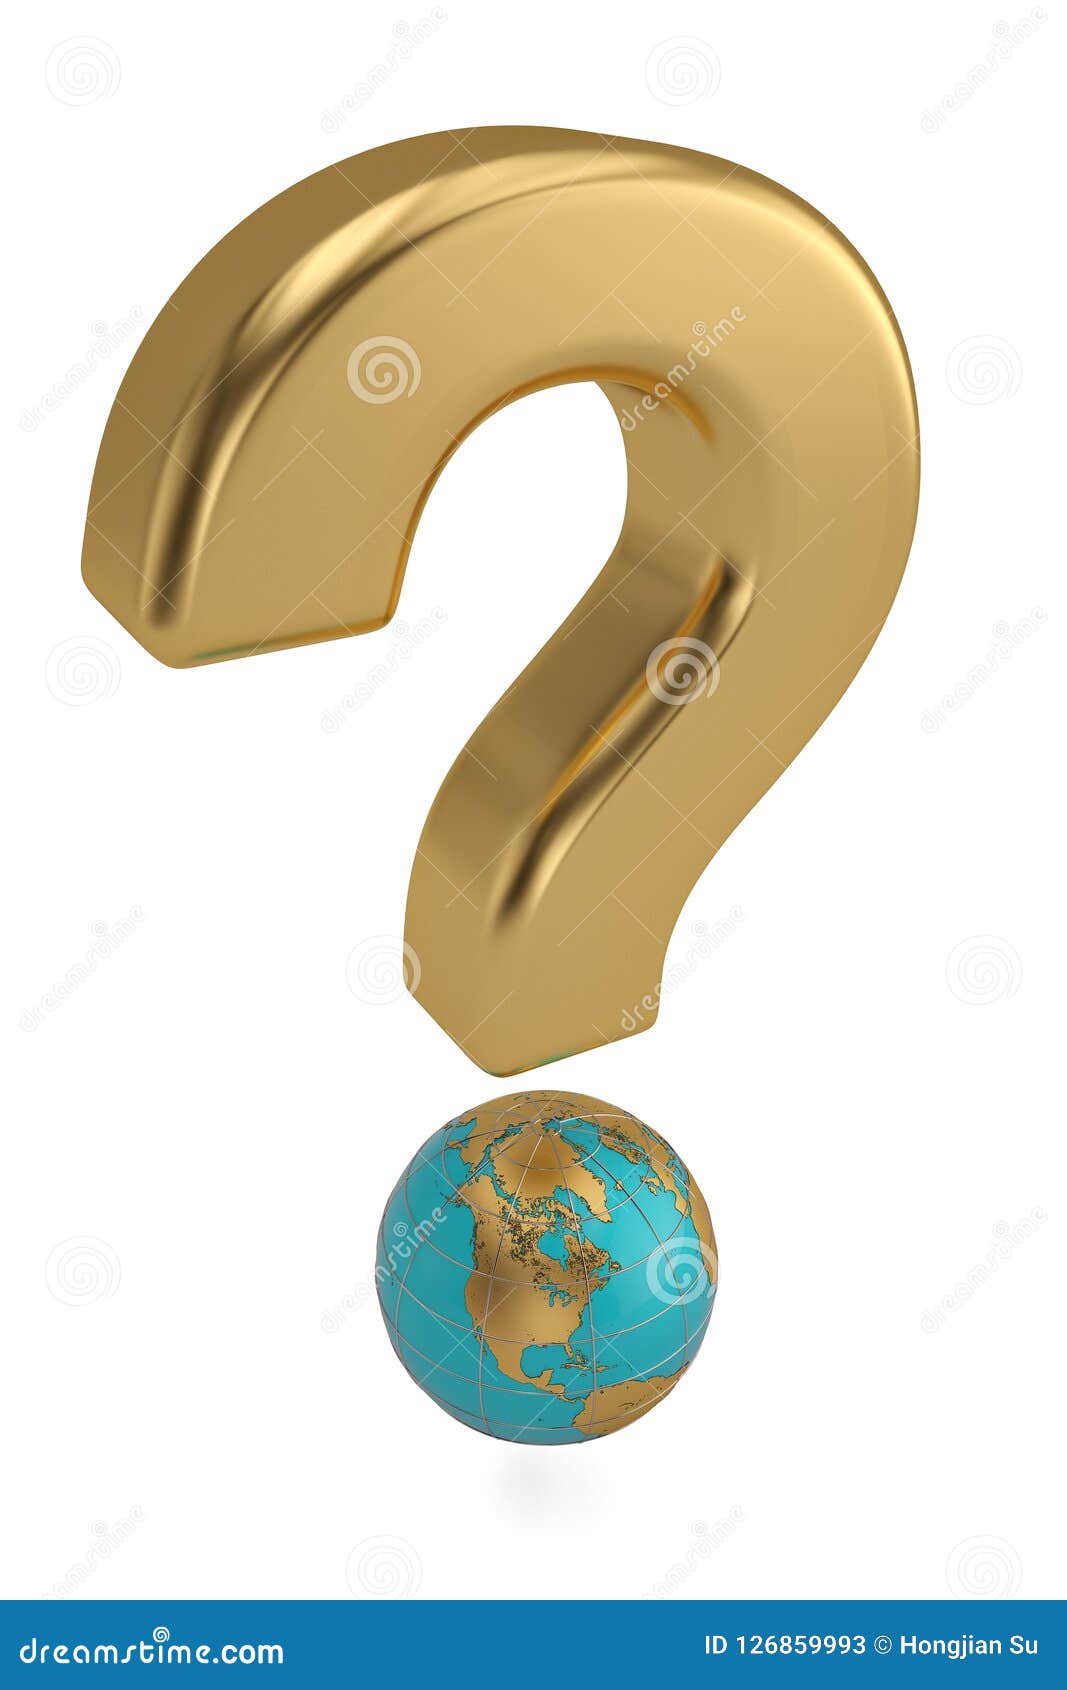 Global questions. Глобус со знаком вопроса. Кольцо знак вопроса. Глобус и вопросительный знак арты. Логотип Глобус пиджак знак вопроса.